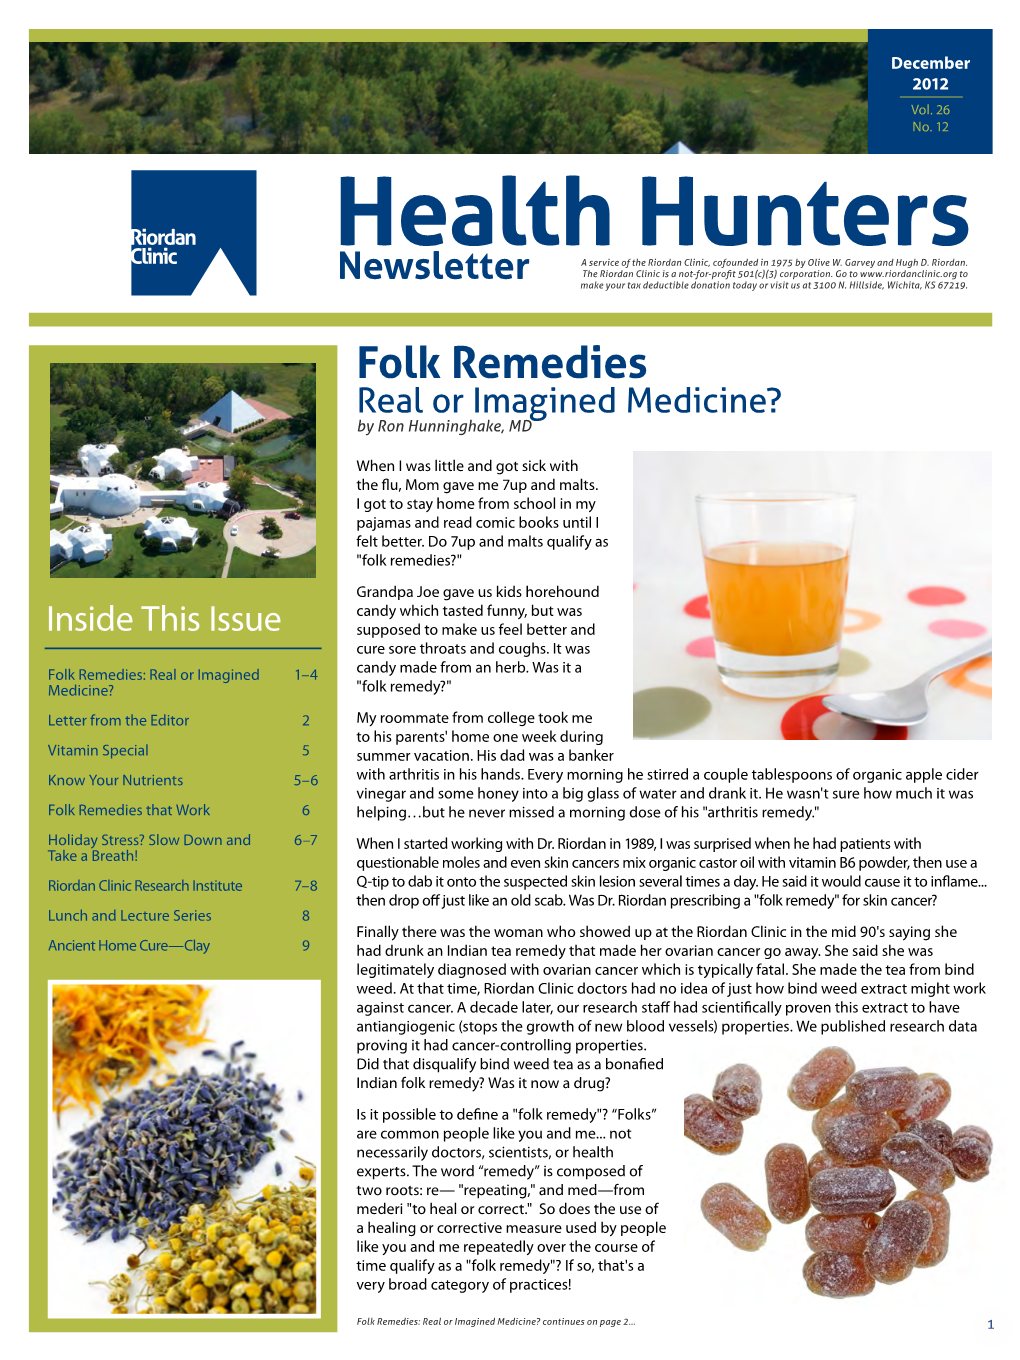 December 2012 Health Hunters Newsletter